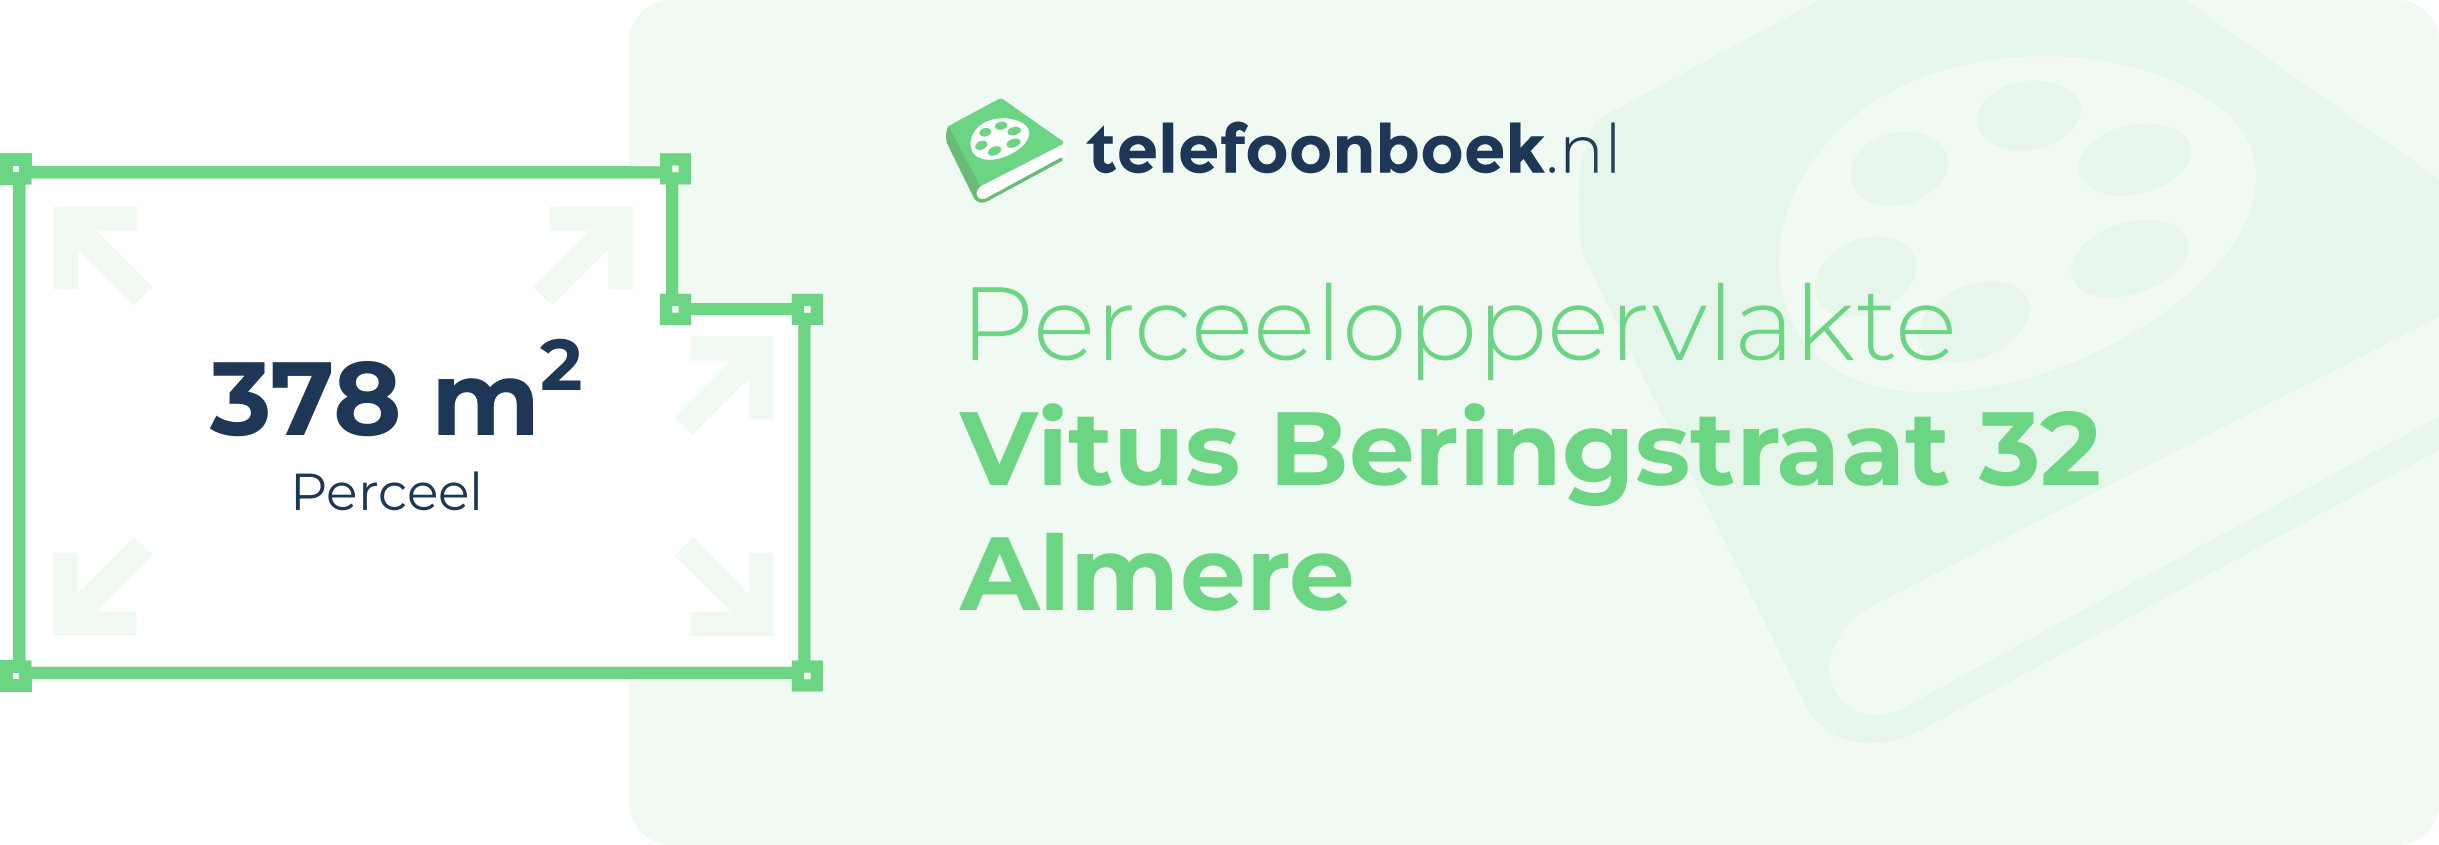 Perceeloppervlakte Vitus Beringstraat 32 Almere